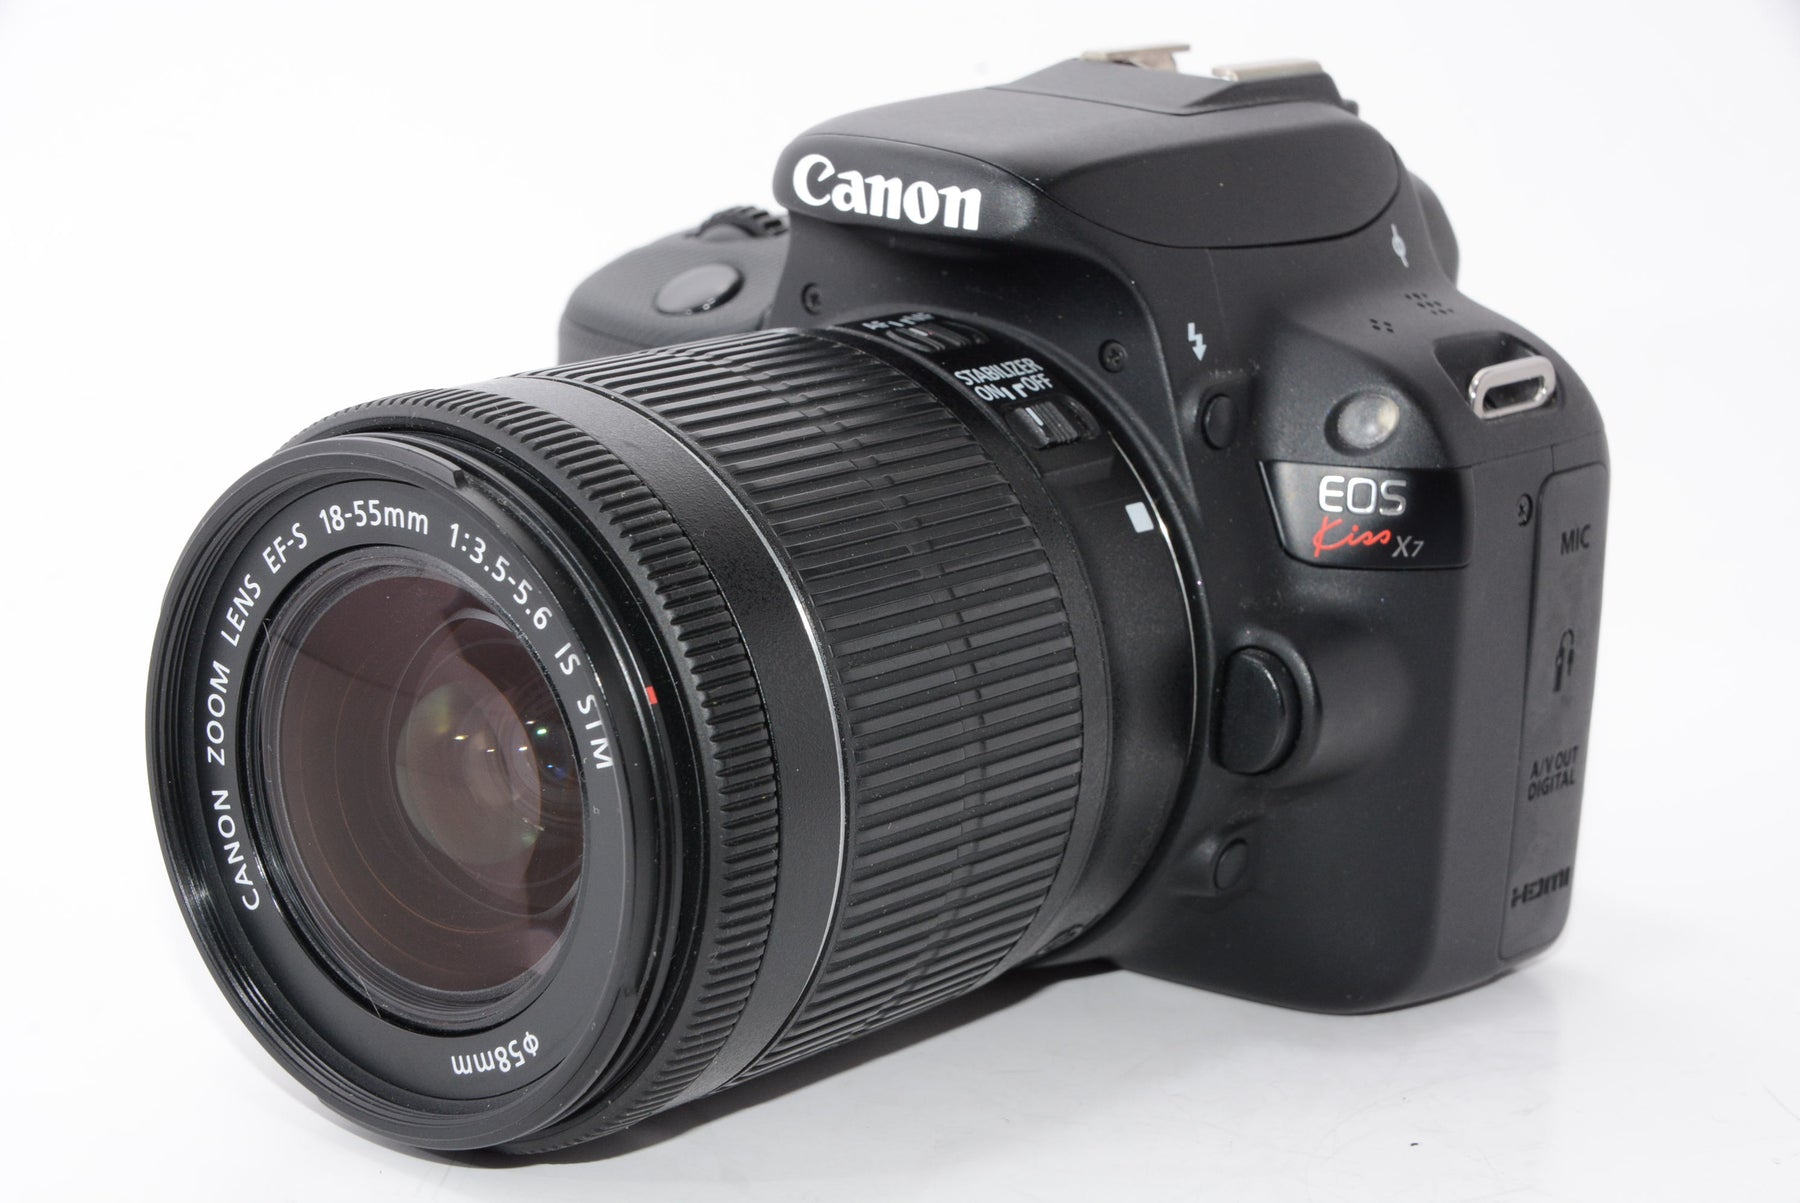 【外観特上級】Canon デジタル一眼レフカメラ EOS Kiss X7 レンズキット EF-S18-55mm F3.5-5.6 IS STM付属 KISSX7-1855ISSTMLK